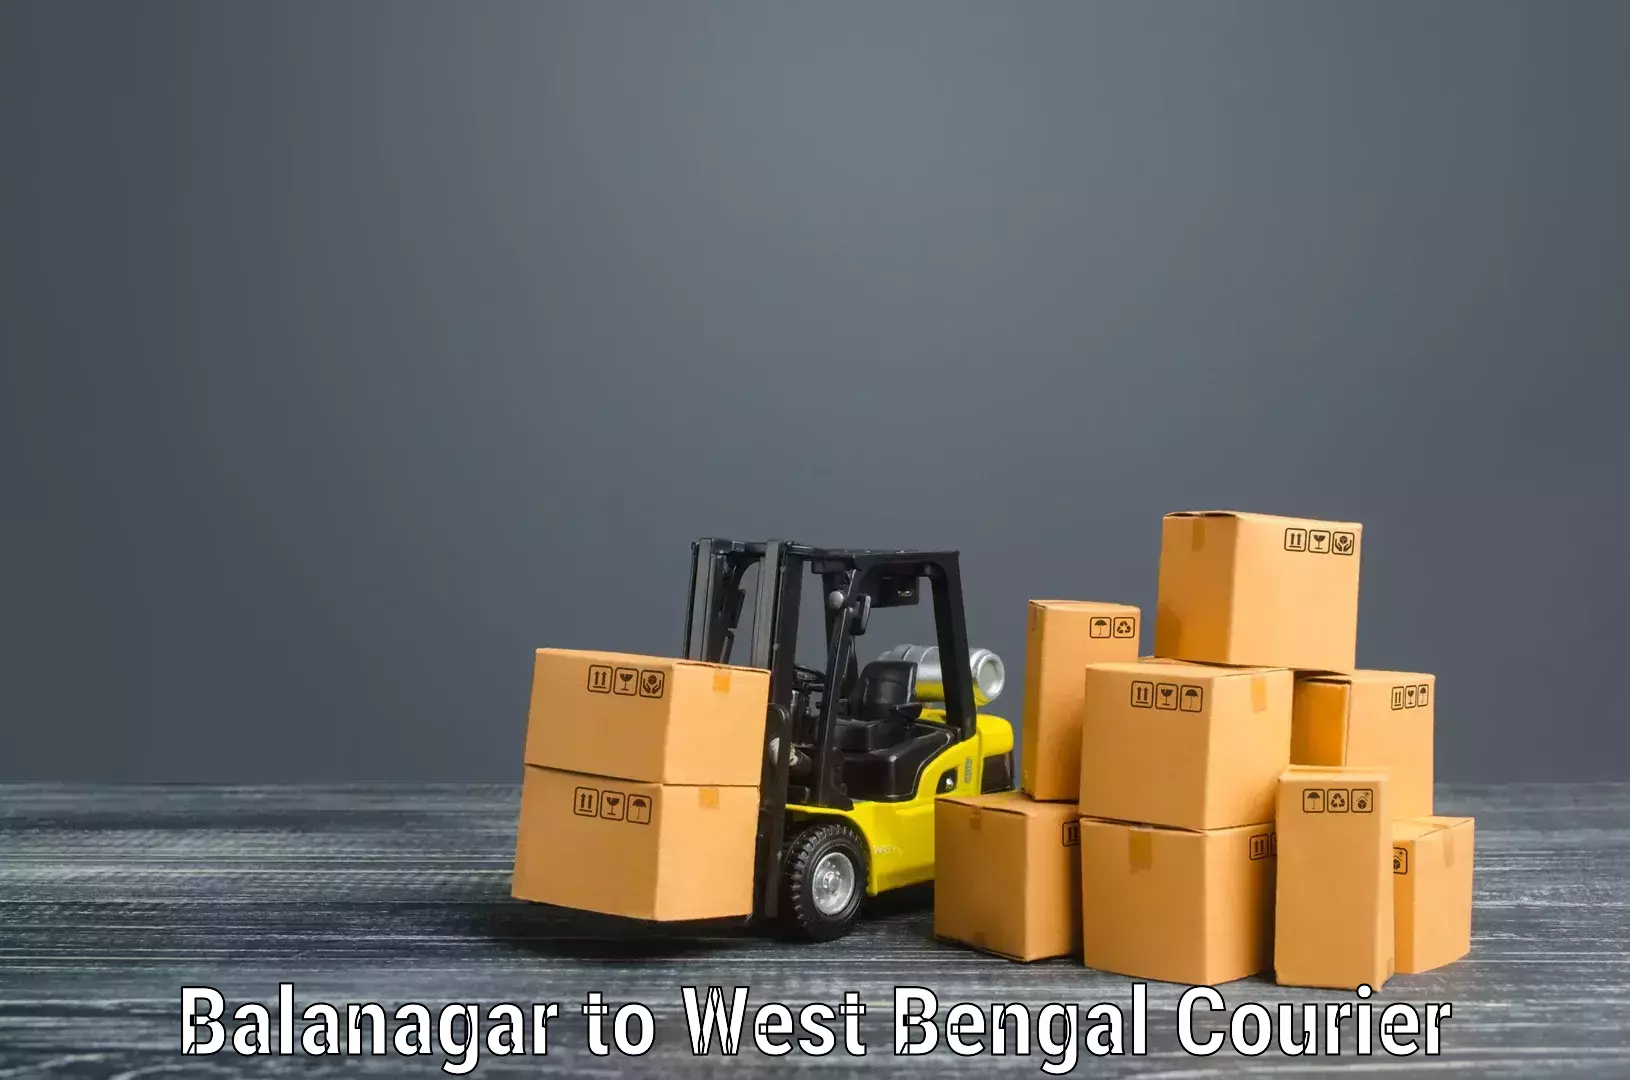 Home moving experts Balanagar to Manteswar